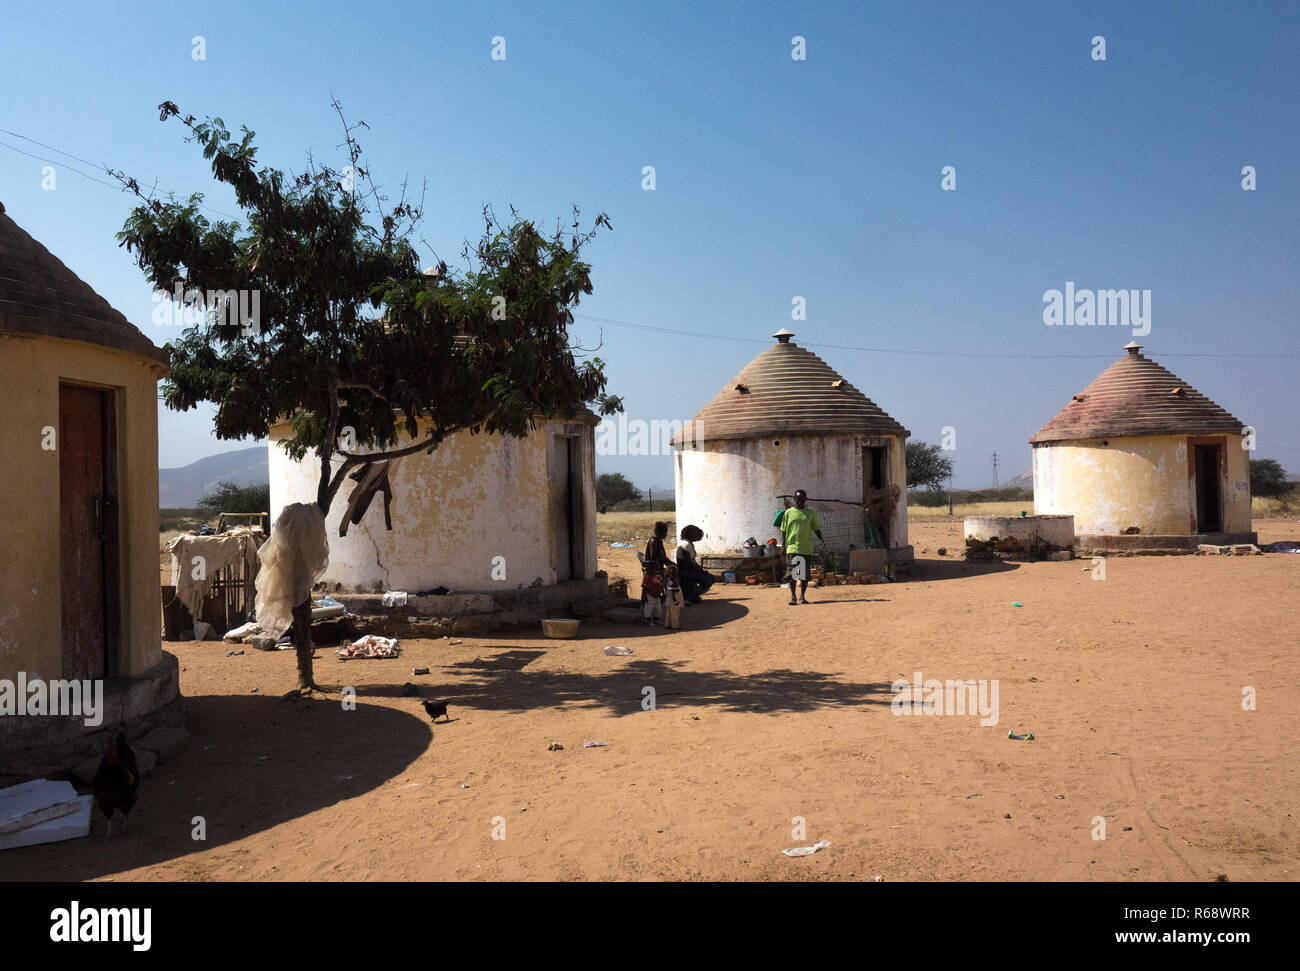 Villaggio costruito dal portoghese con case circolari, provincia di Namibe, Caraculo, Angola Foto Stock